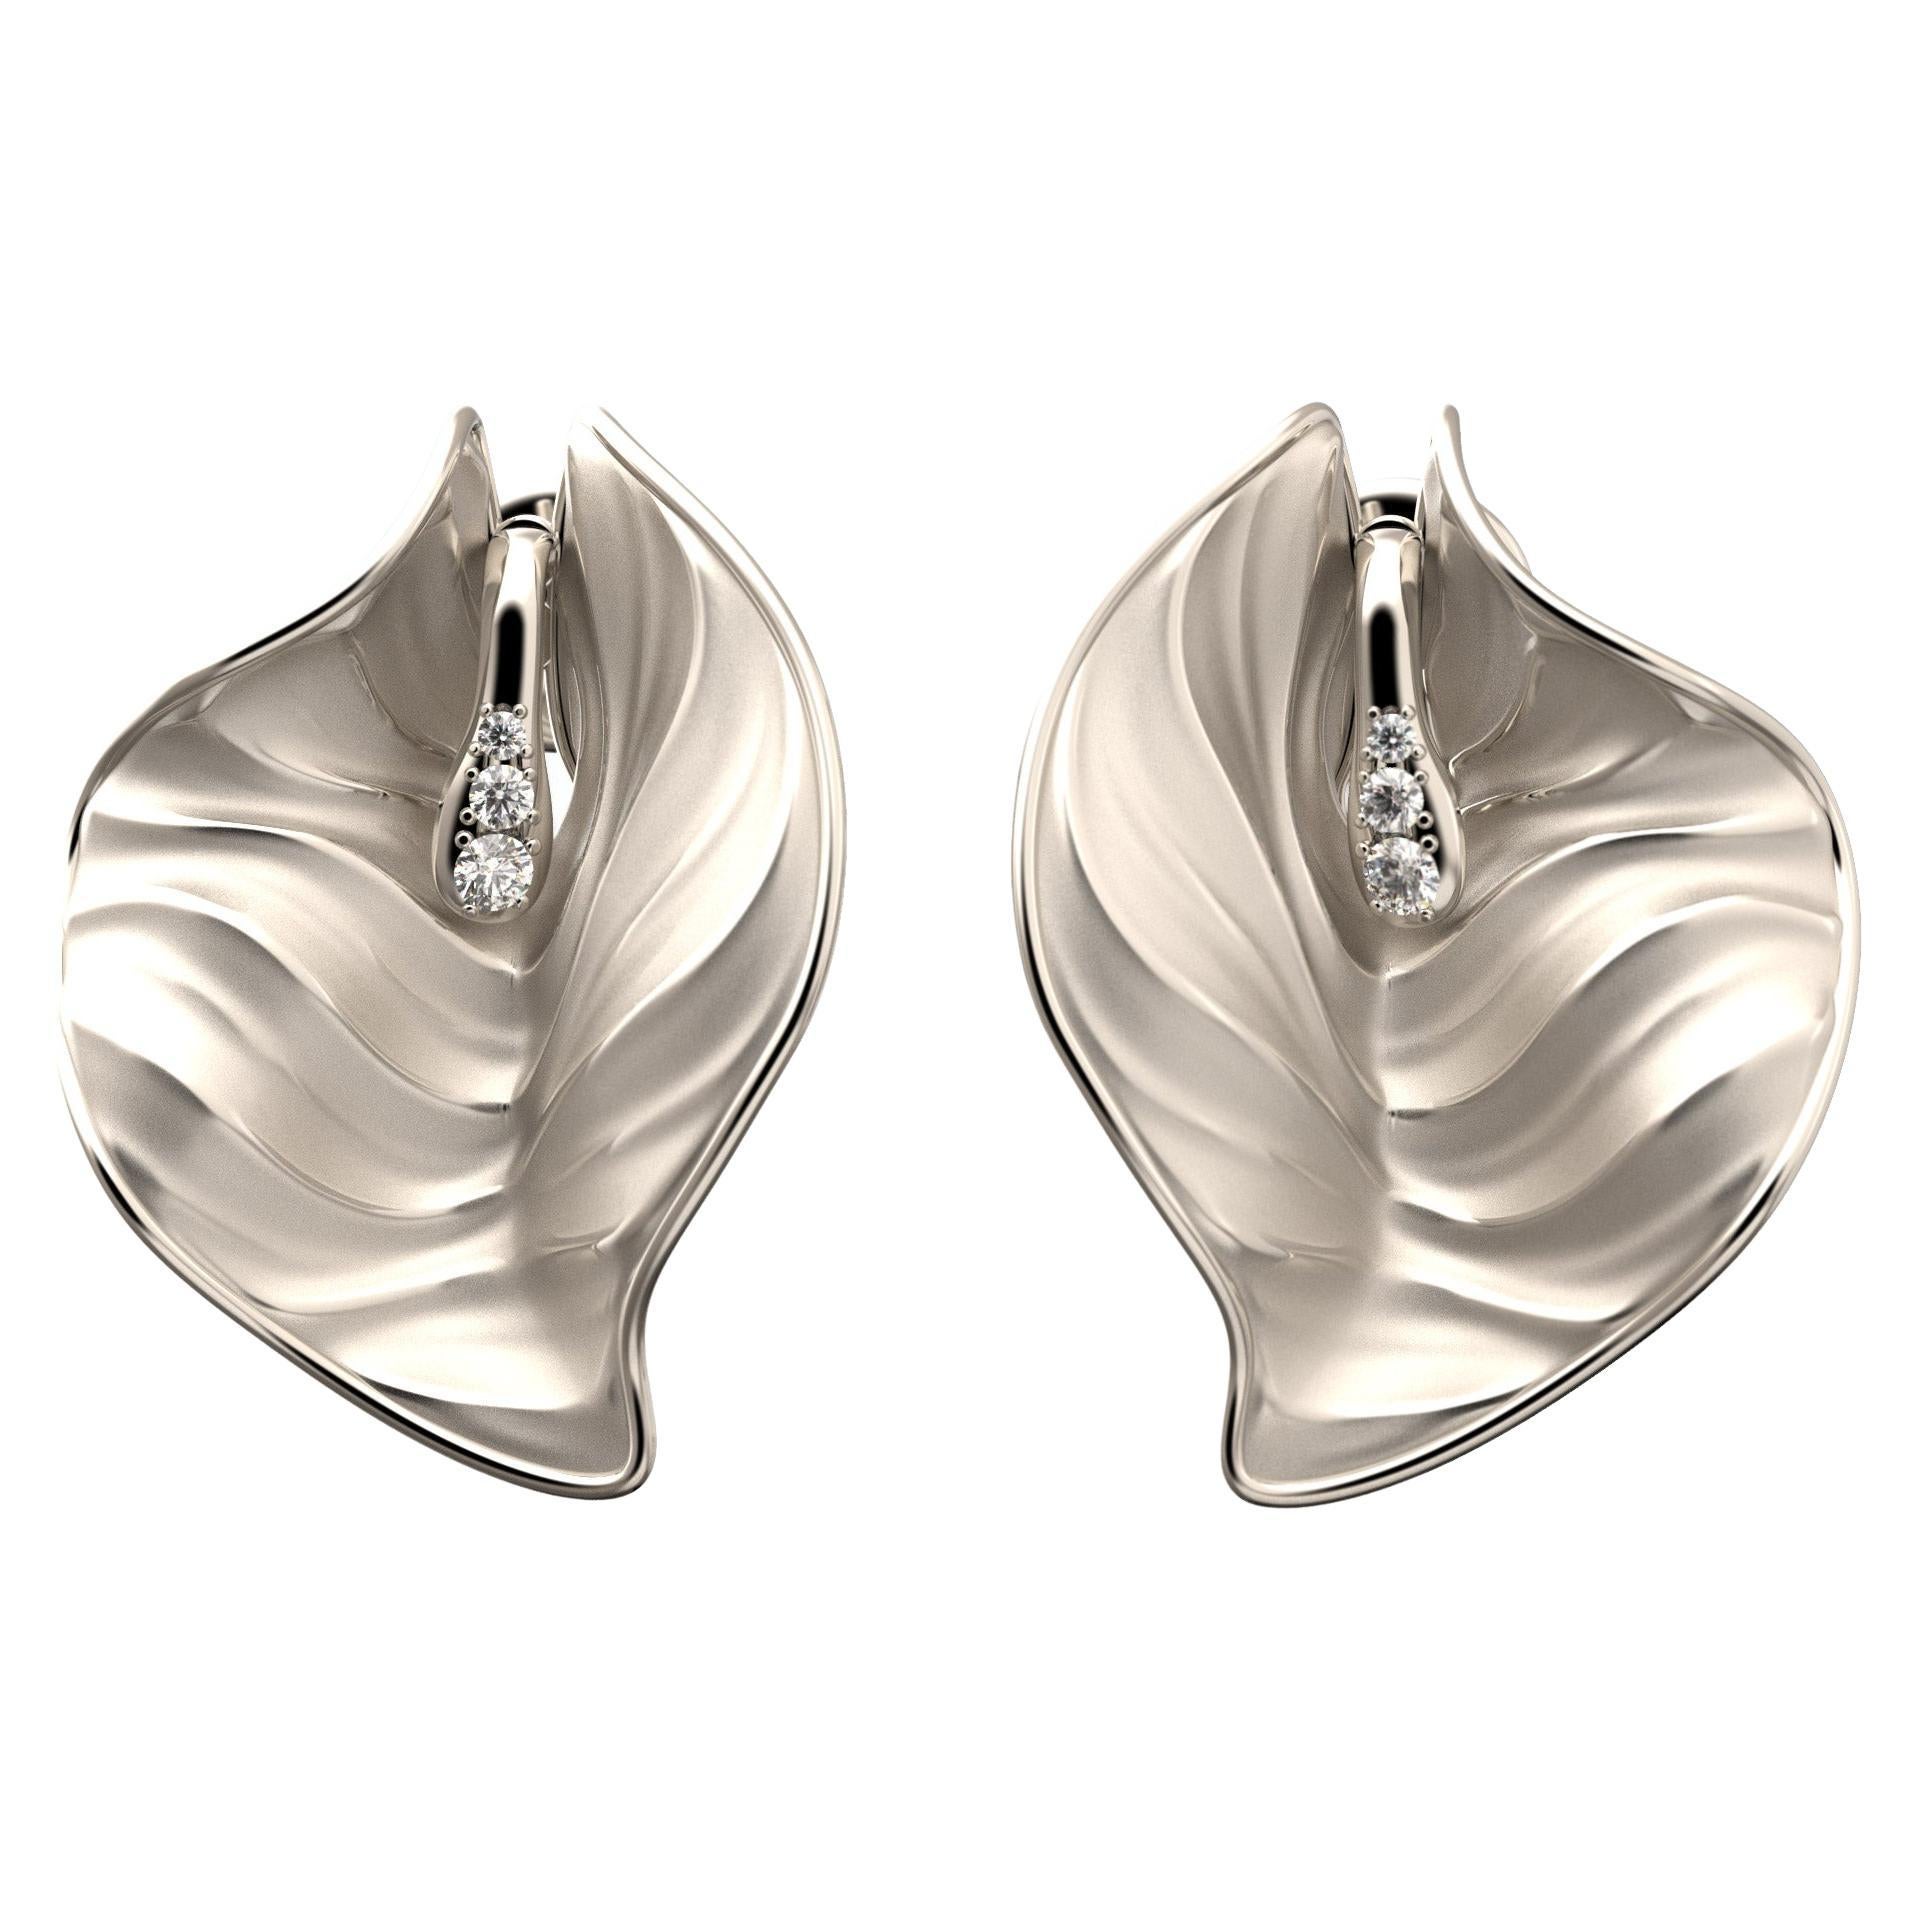 Die Calla-Ohrringe zeichnen sich durch ein Wechselspiel geschwungener Bewegungen aus, die durch die auf dem Stempel gefassten Diamanten verschönert werden.
Ein anspruchsvolles und einzigartiges Schmuckstück.  
Vento ist eine Kollektion, die die